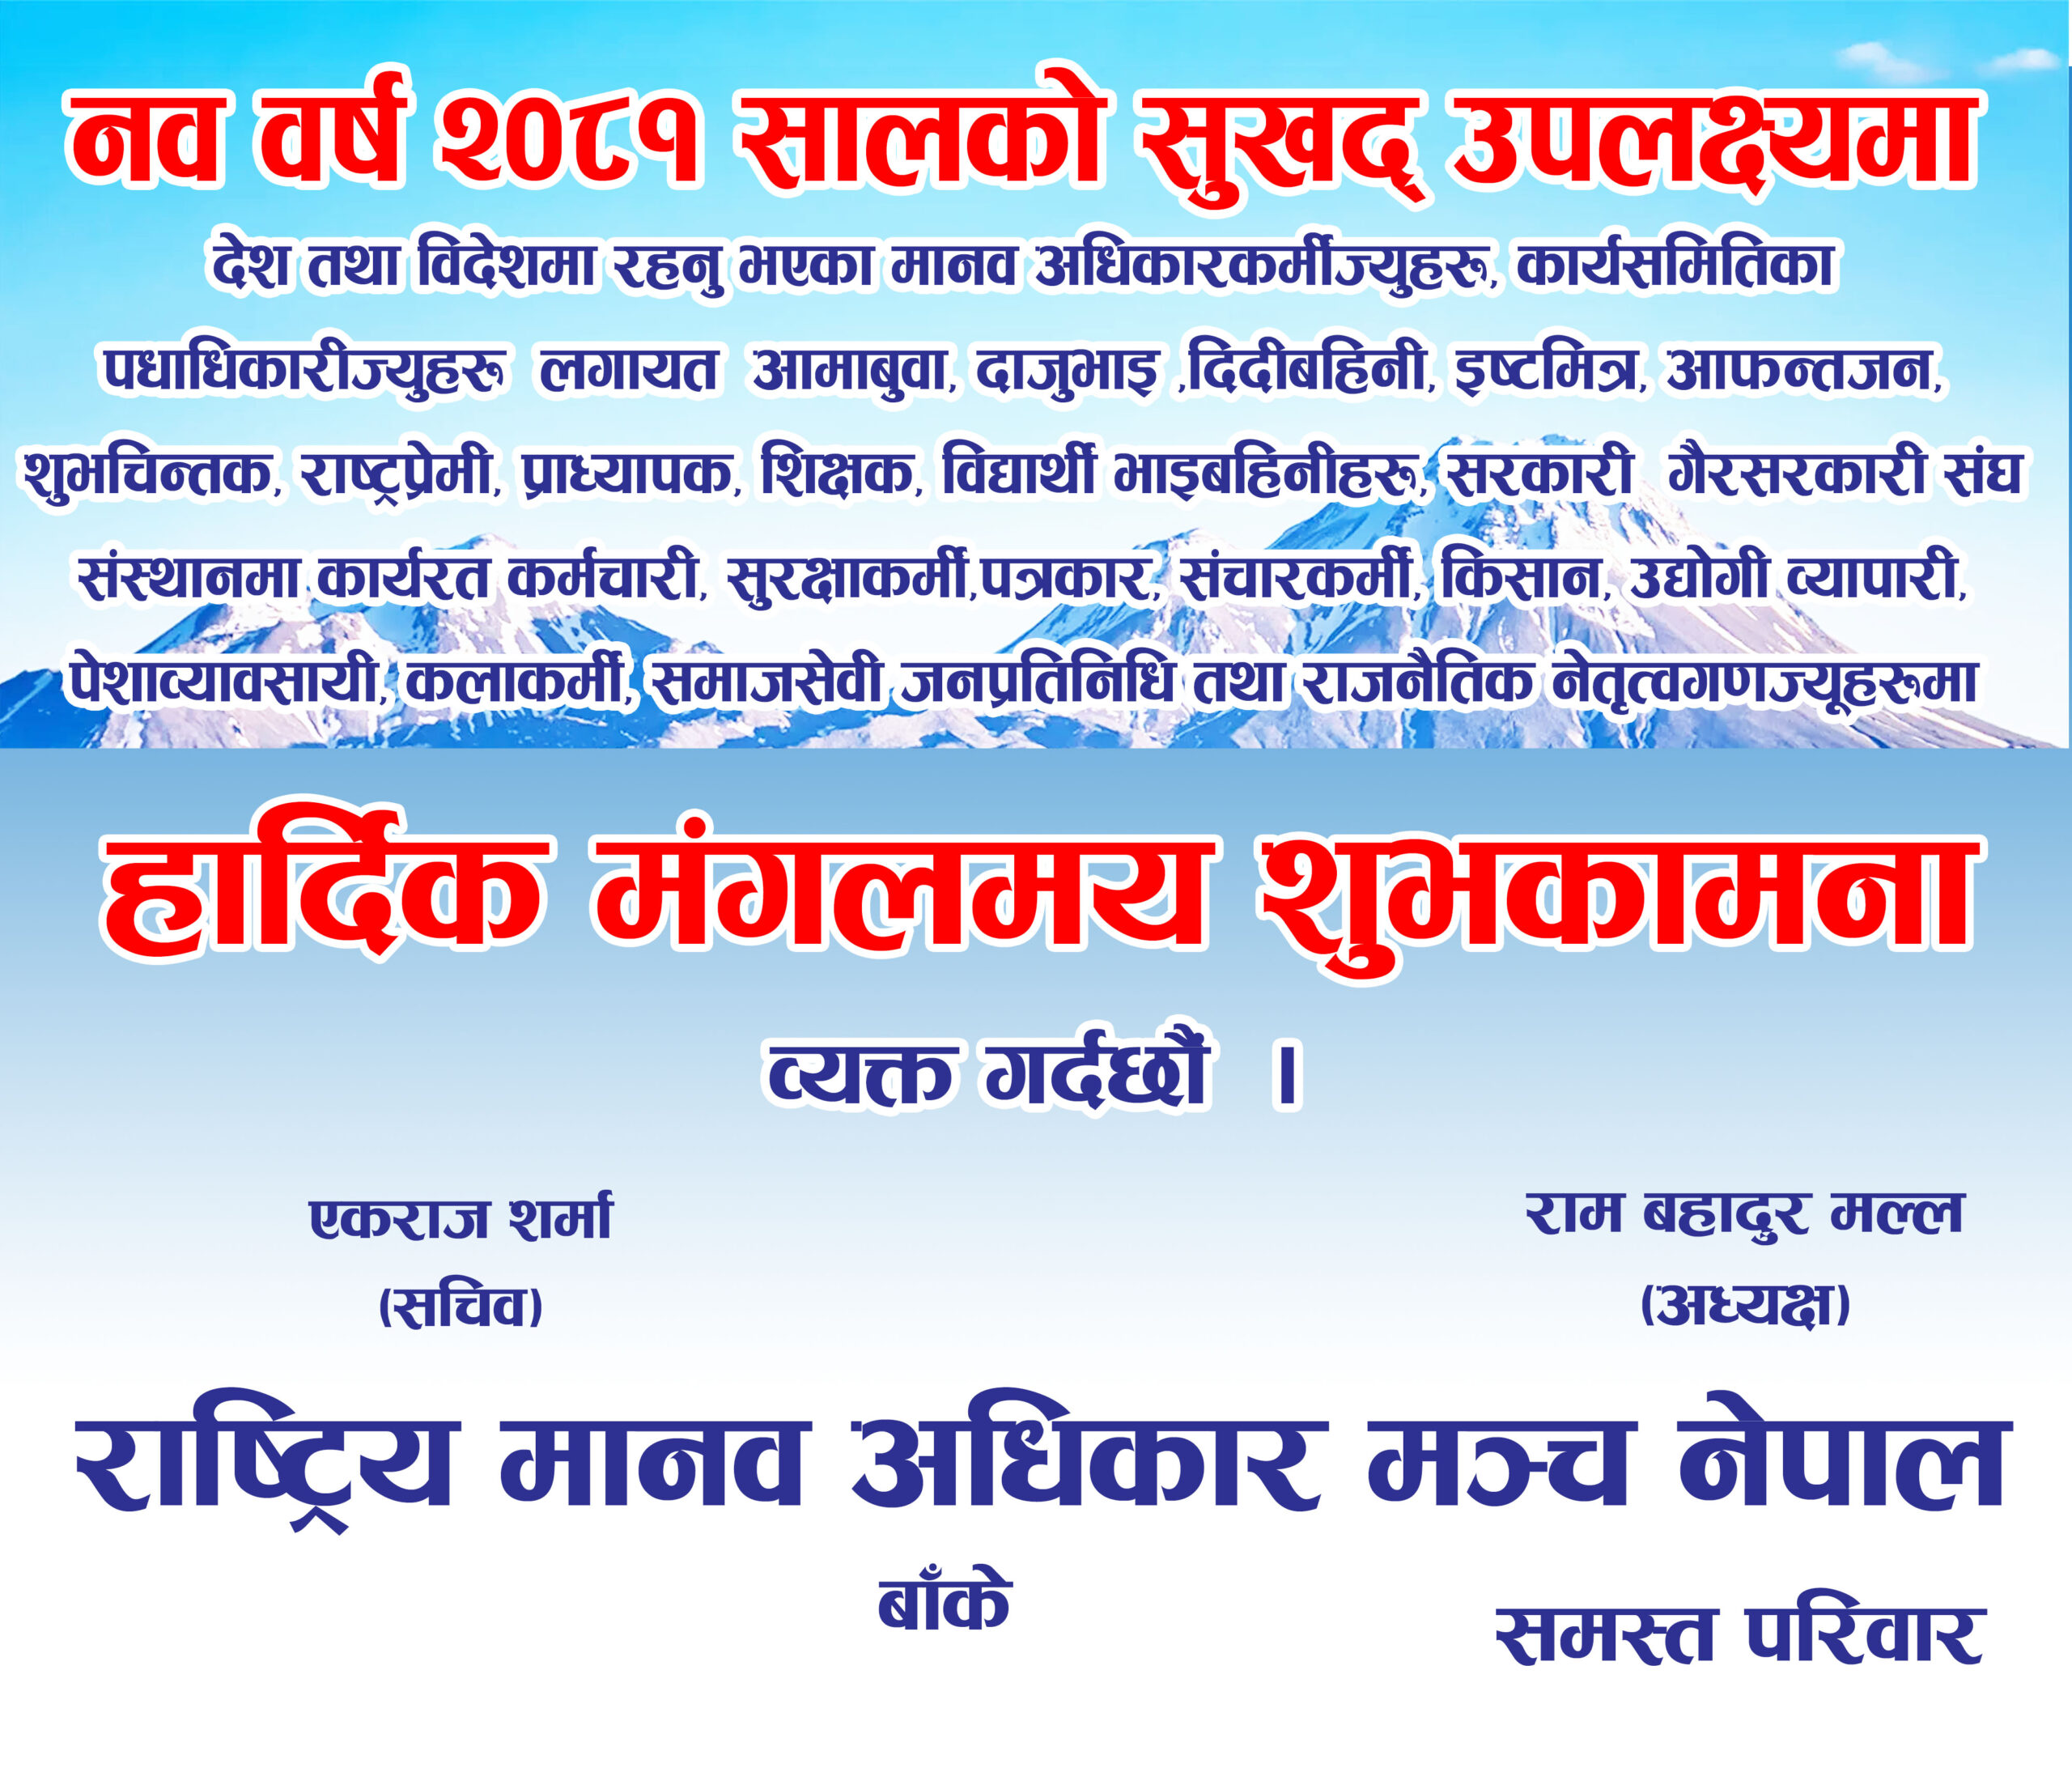 राष्ट्रिय मानव अधिकार मञ्च नेपाल बाँकेद्वारा नव वर्ष २०८१ सालको शुभकामना !